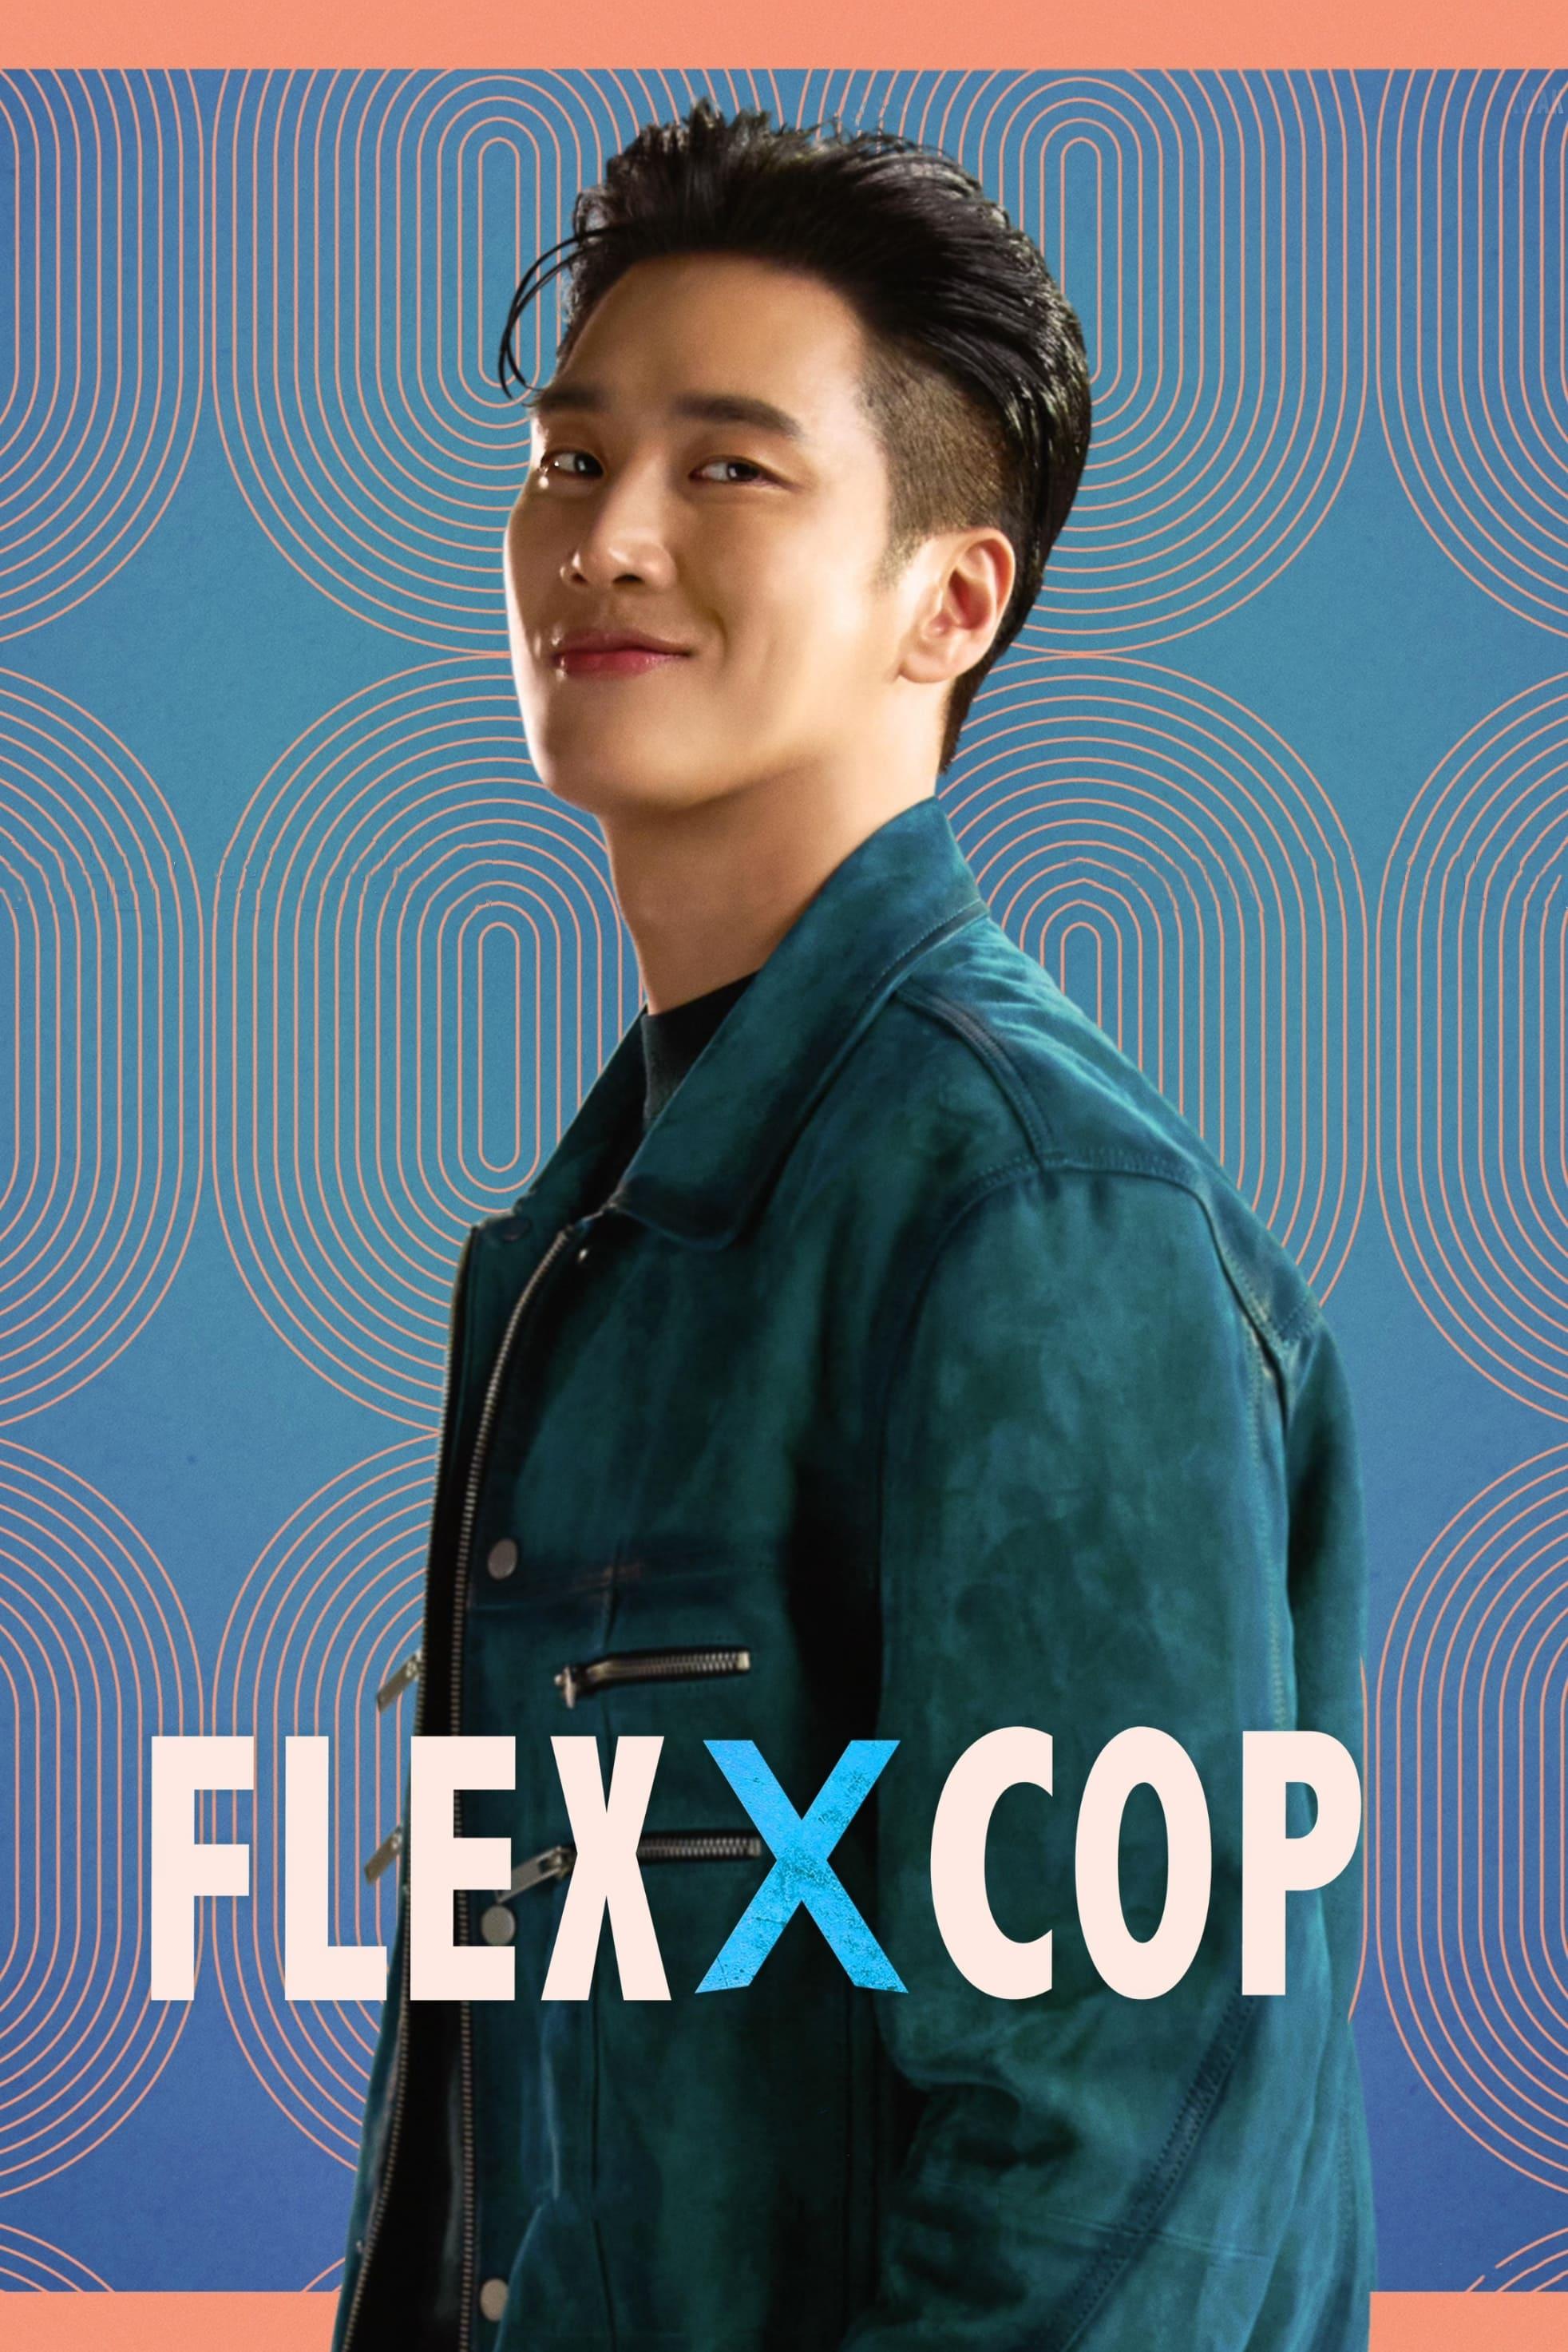 Flex x Cop poster